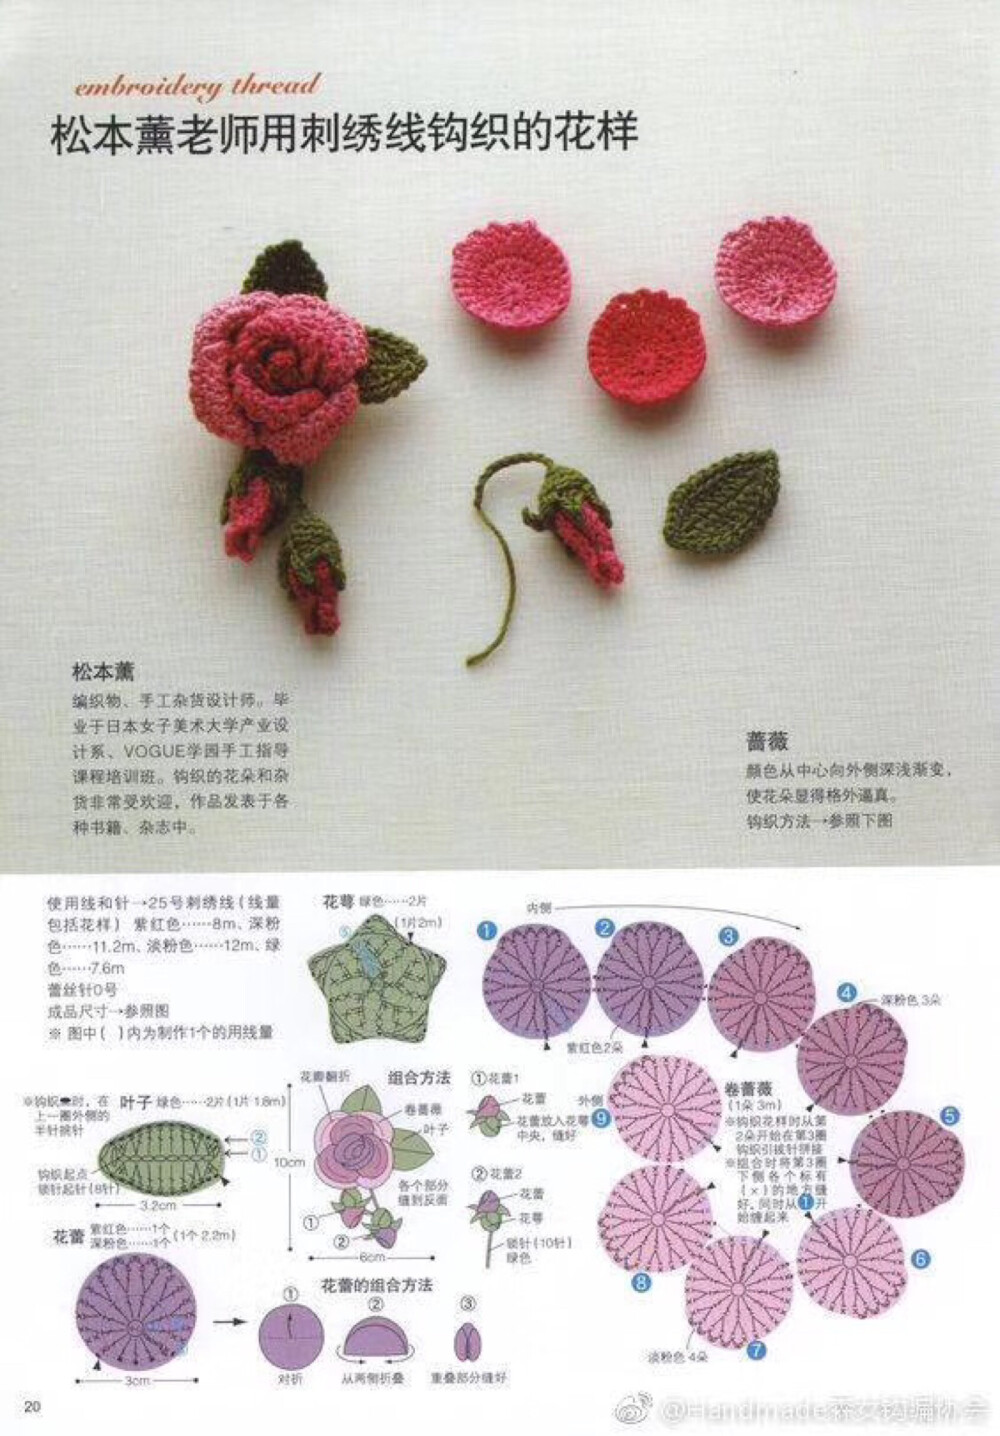 各种小花朵的毛线织法图片